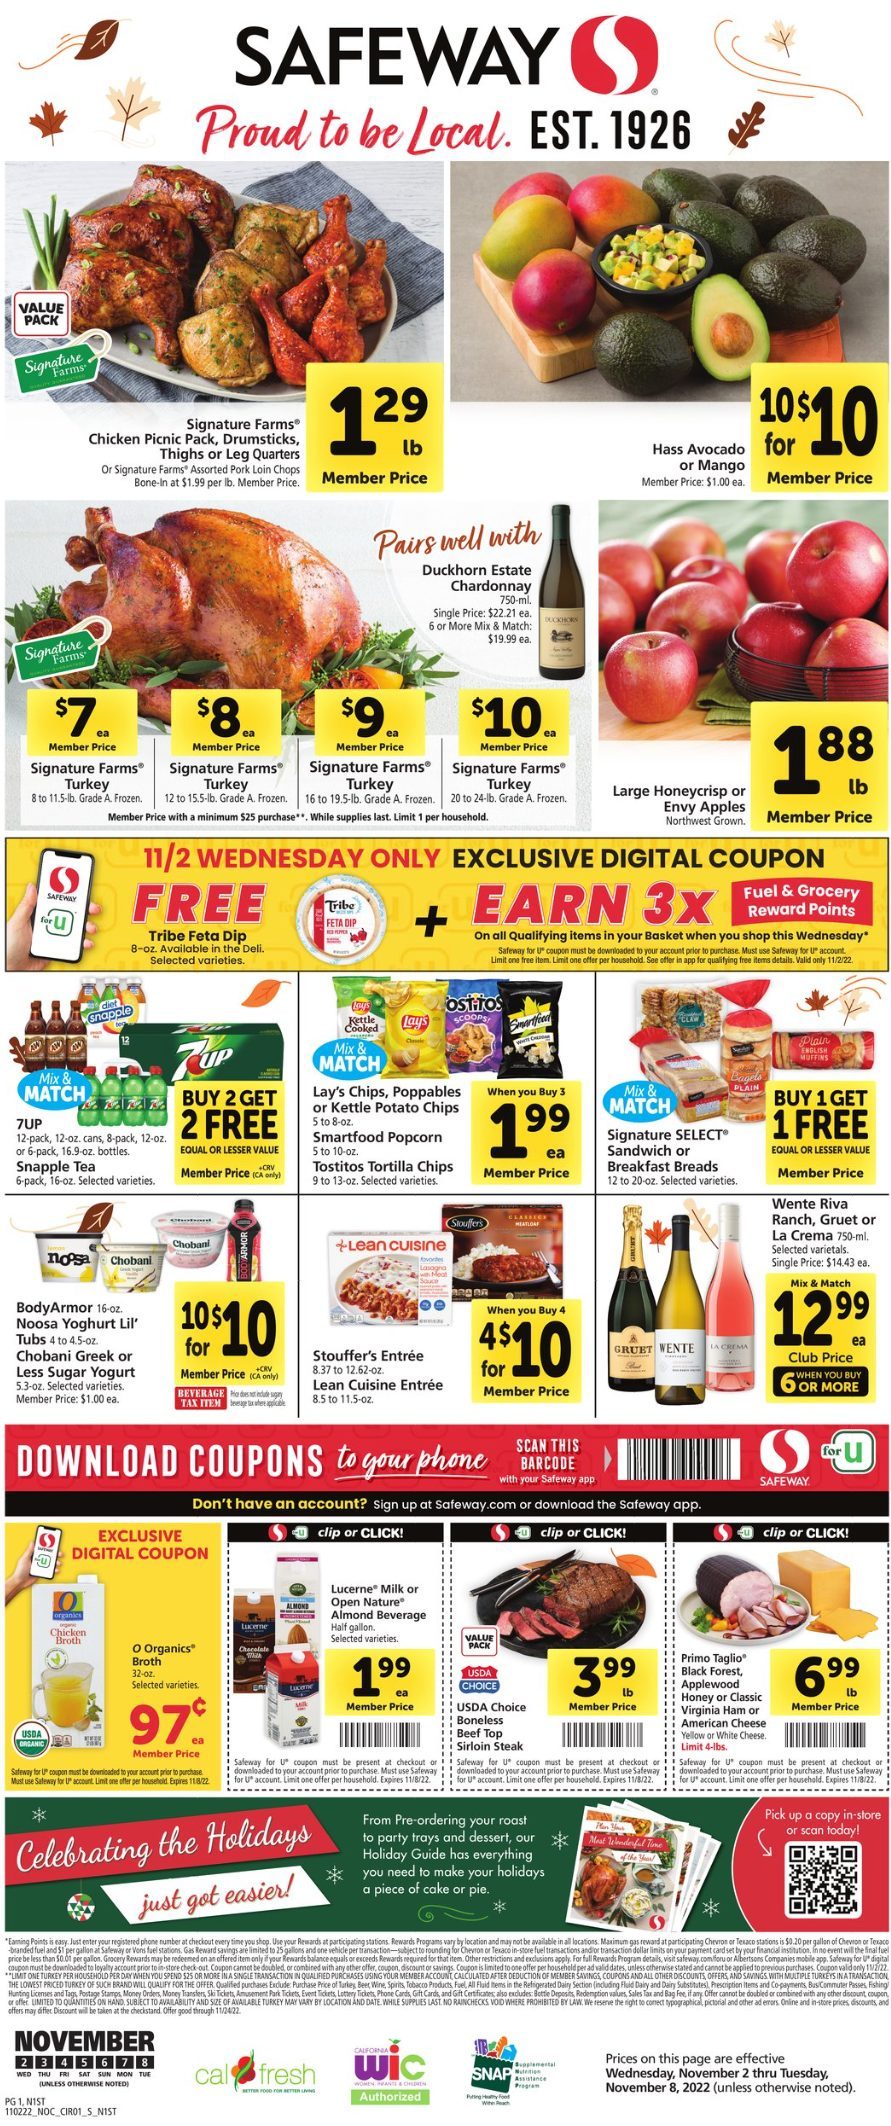 Safeway Weekly Ad Nov 2 8, 2022 WeeklyAds2